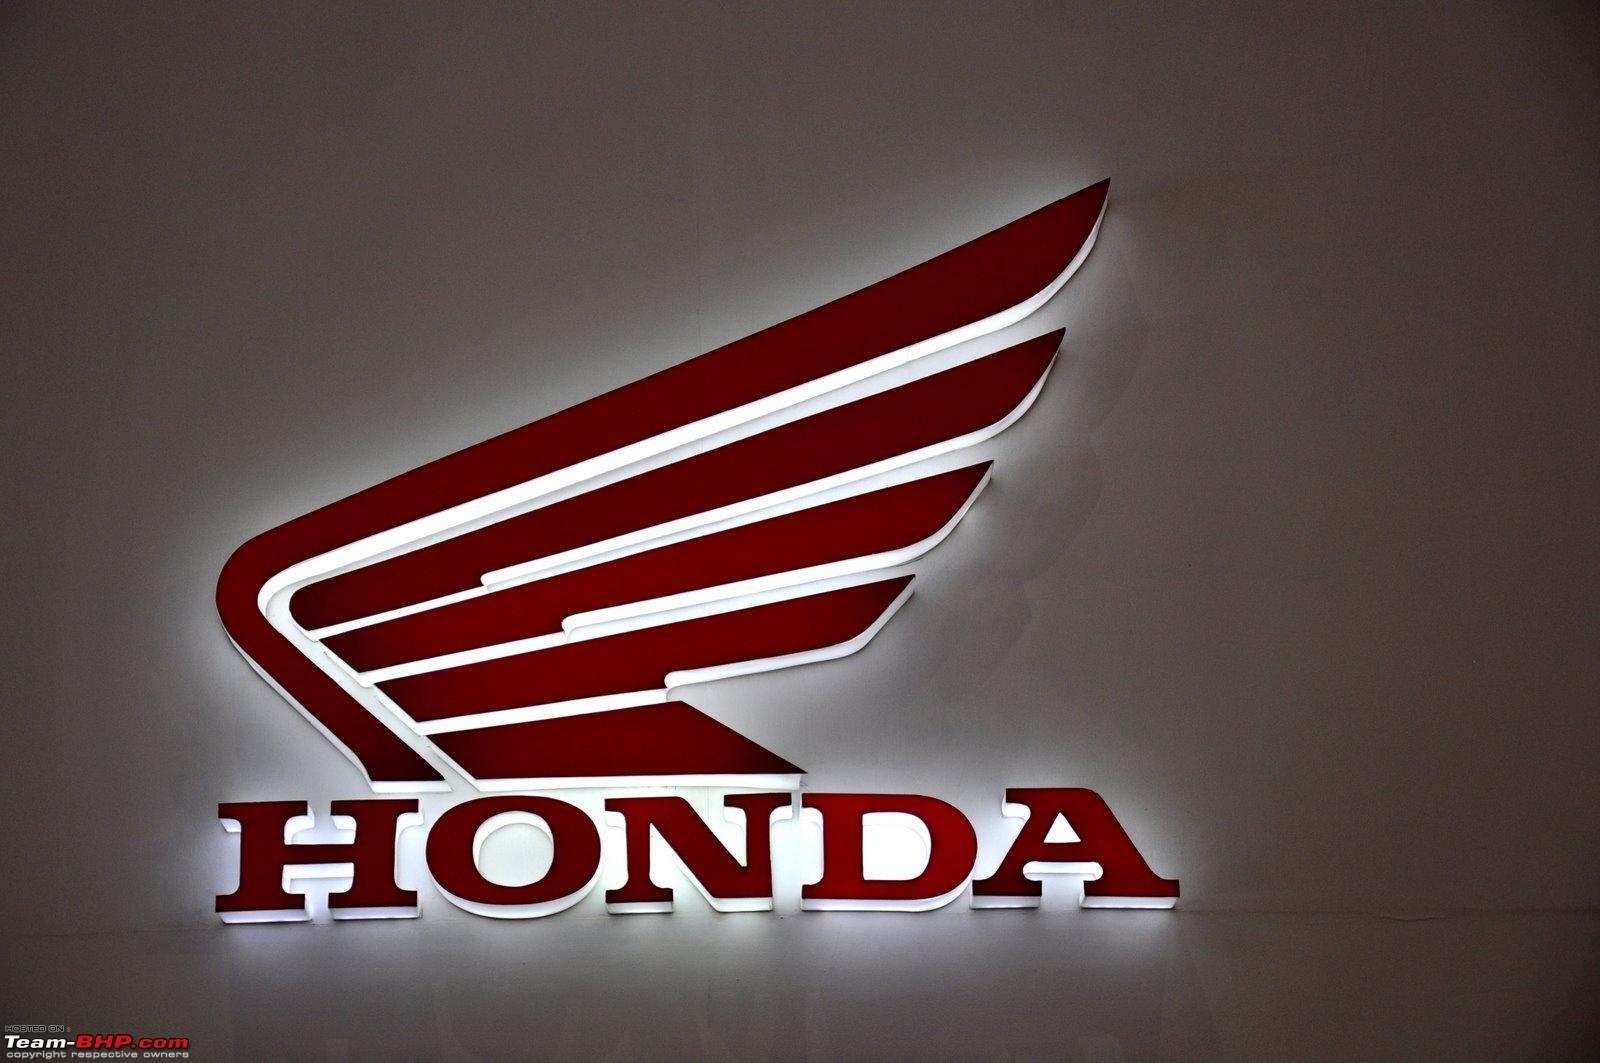 Honda Motorcycle Logo - Littlemorrui2: Honda Motorcycle Logo Vector Image